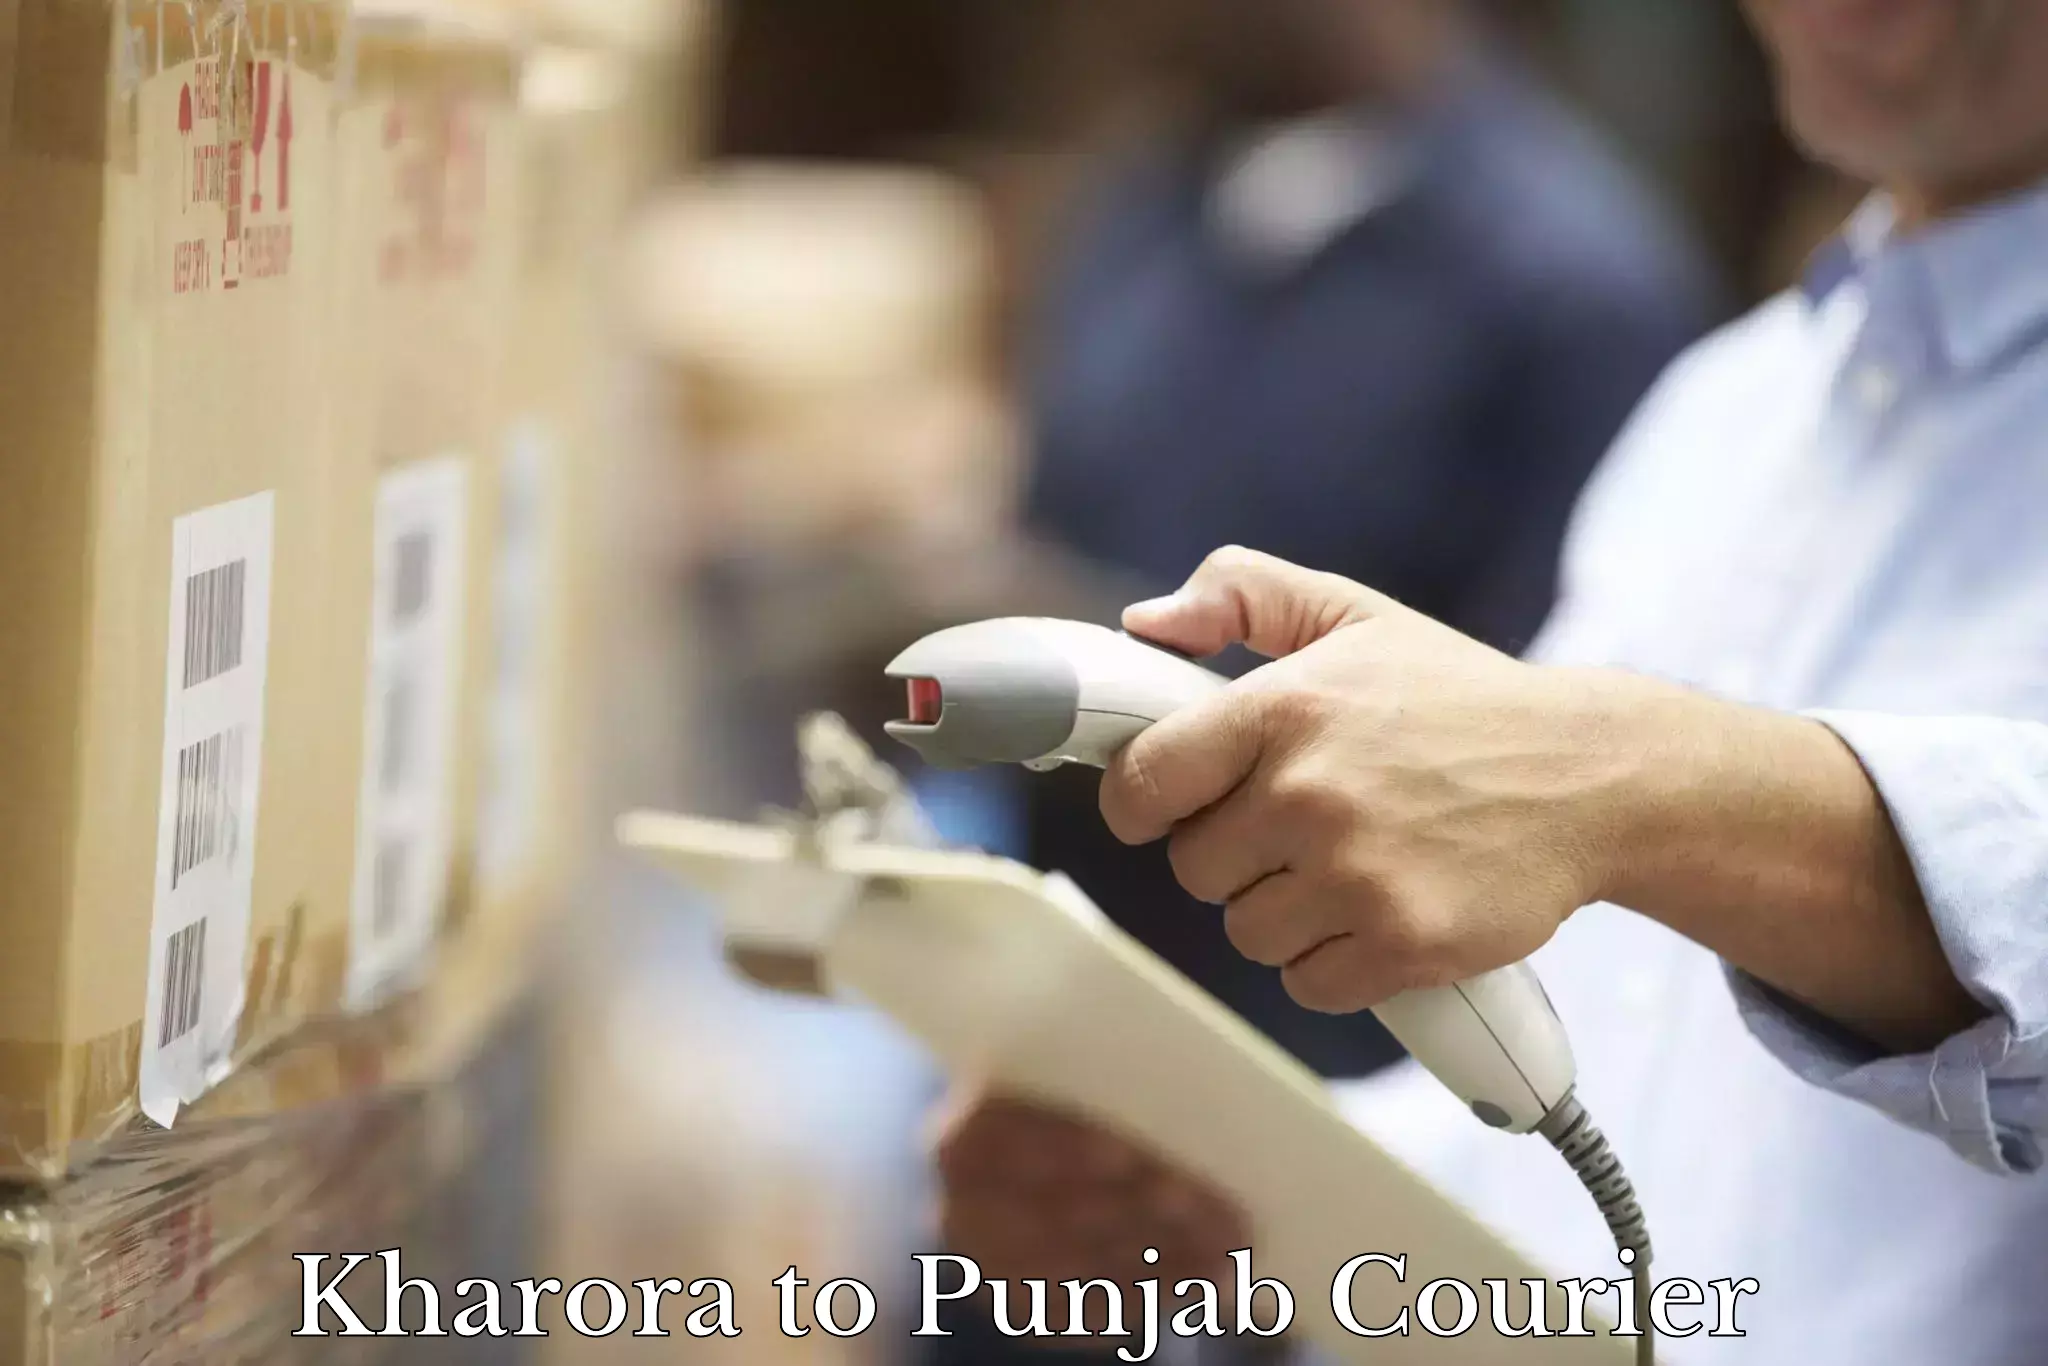 Efficient parcel service Kharora to Ropar